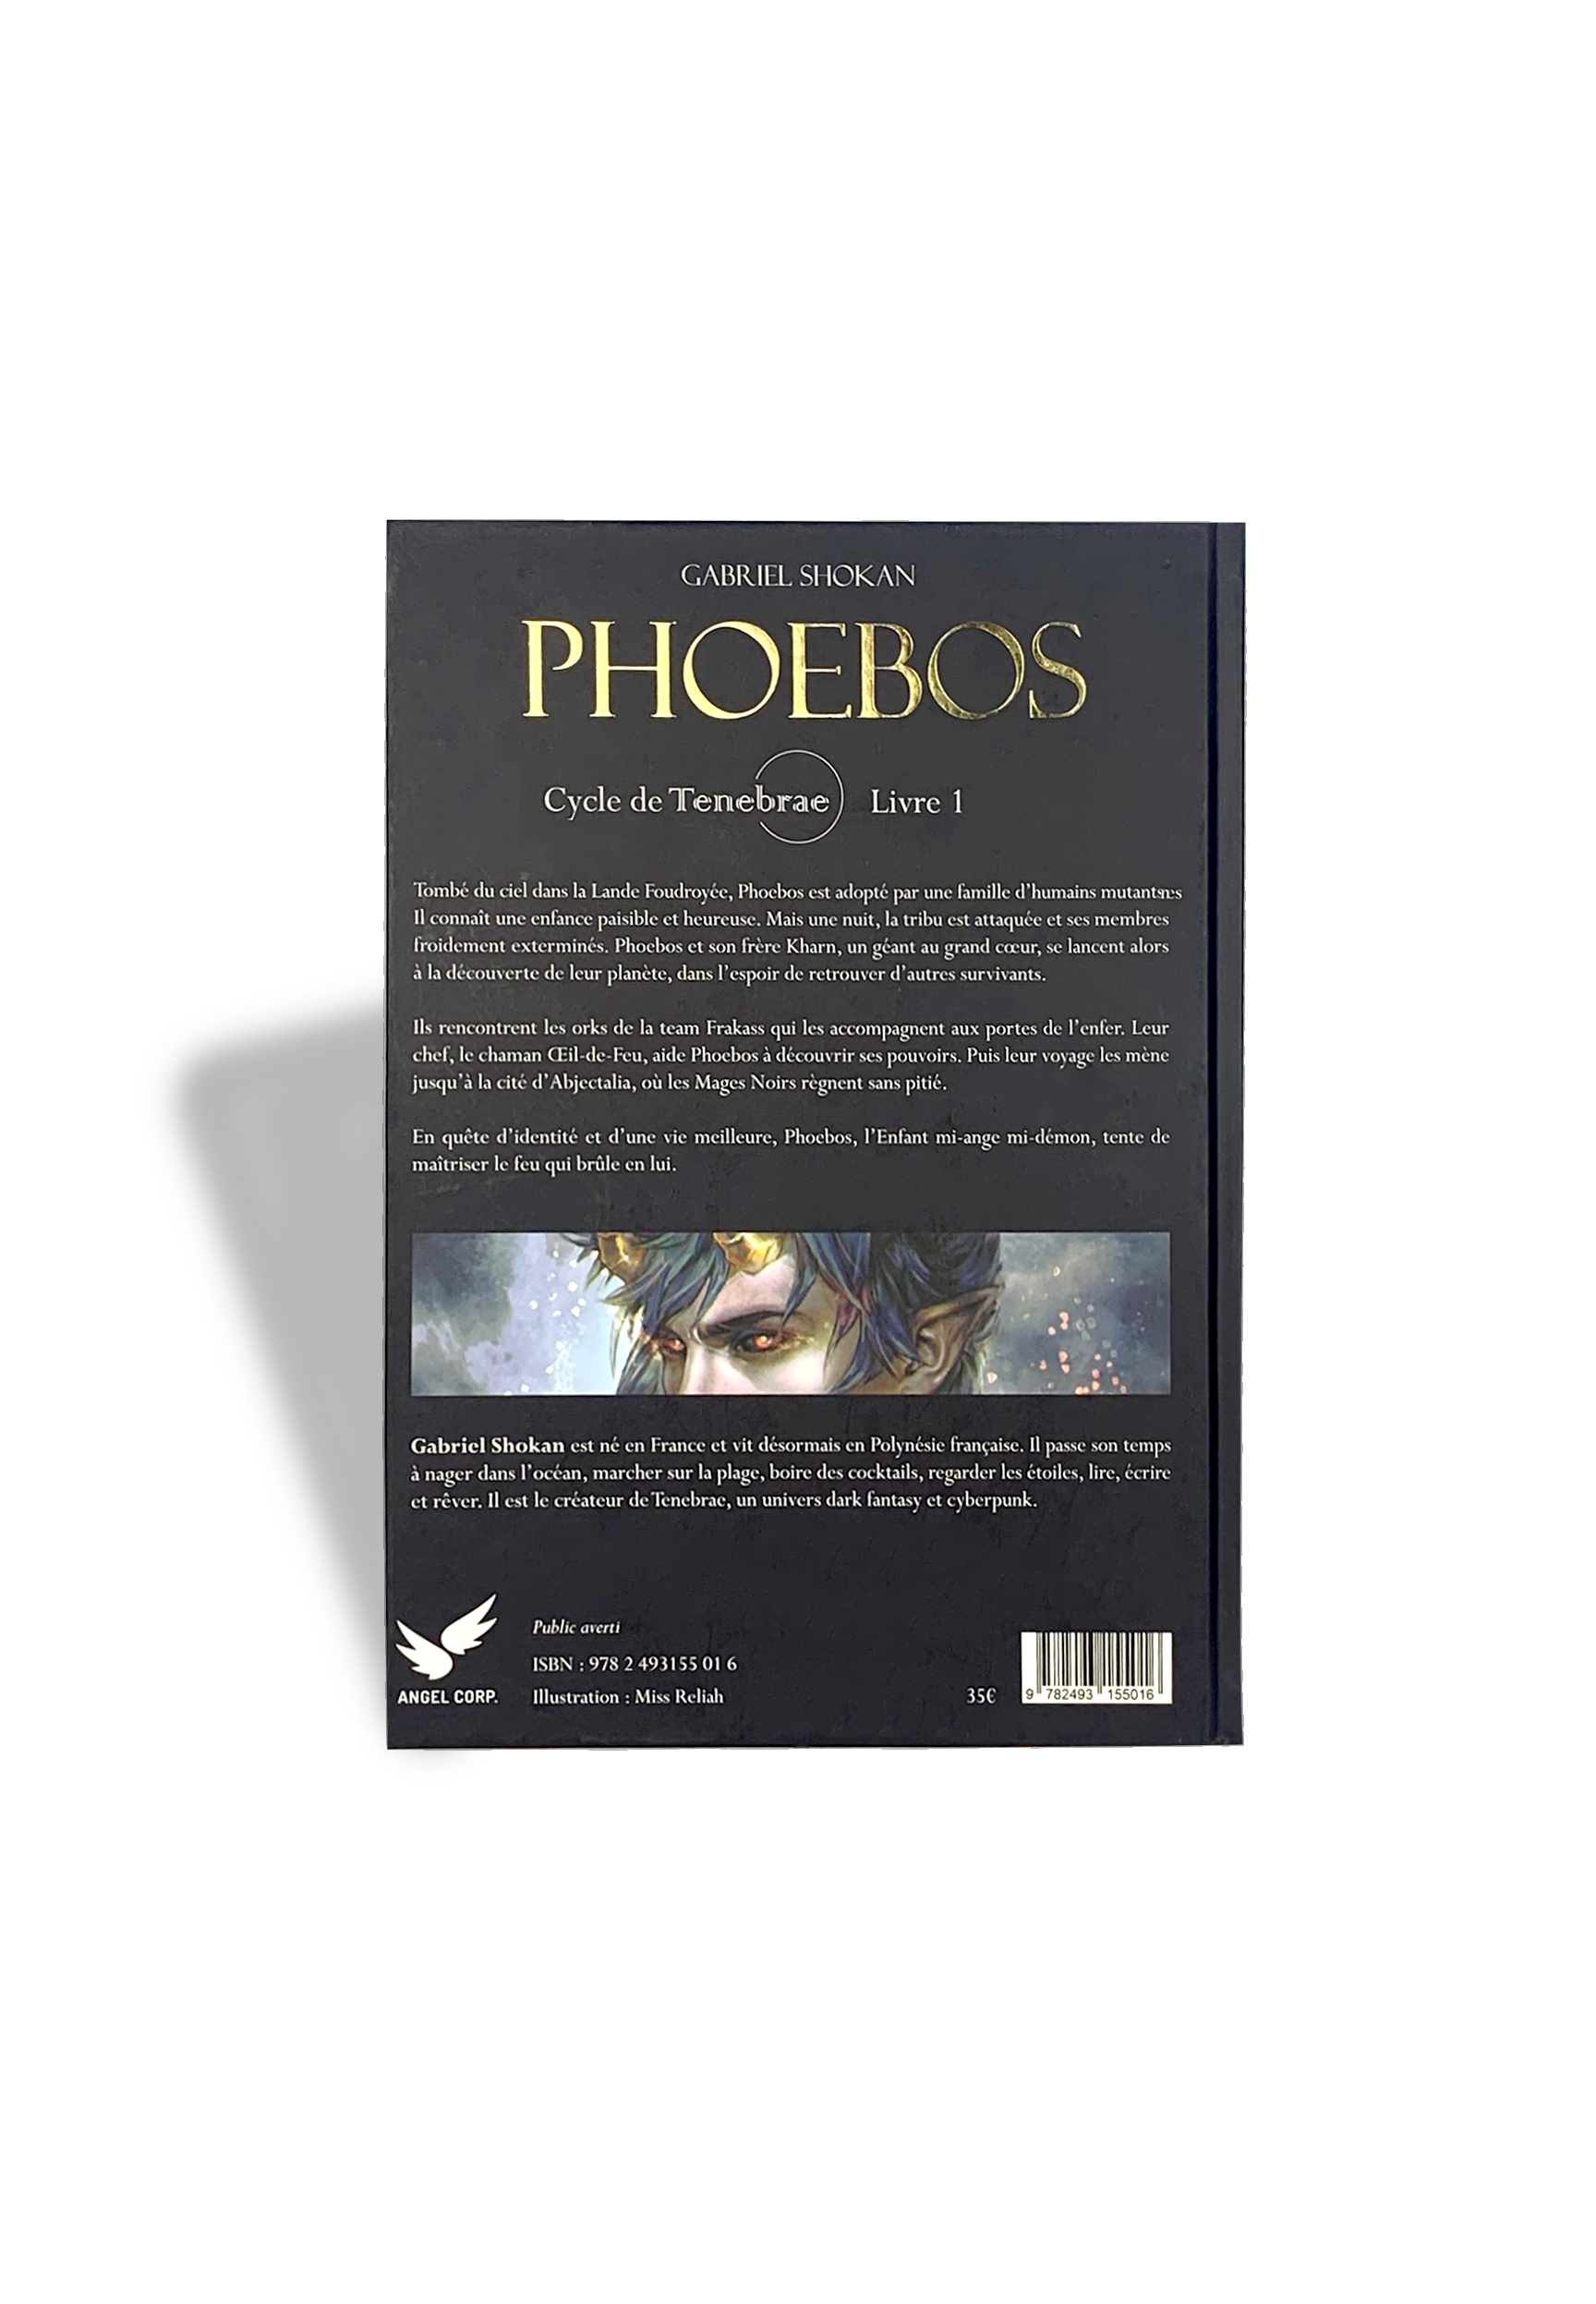 Quatrième  de couverture de Phoebos, premier roman de Darkfantasy du Cycle de Tenebrae écrit par Gabriel Shokan